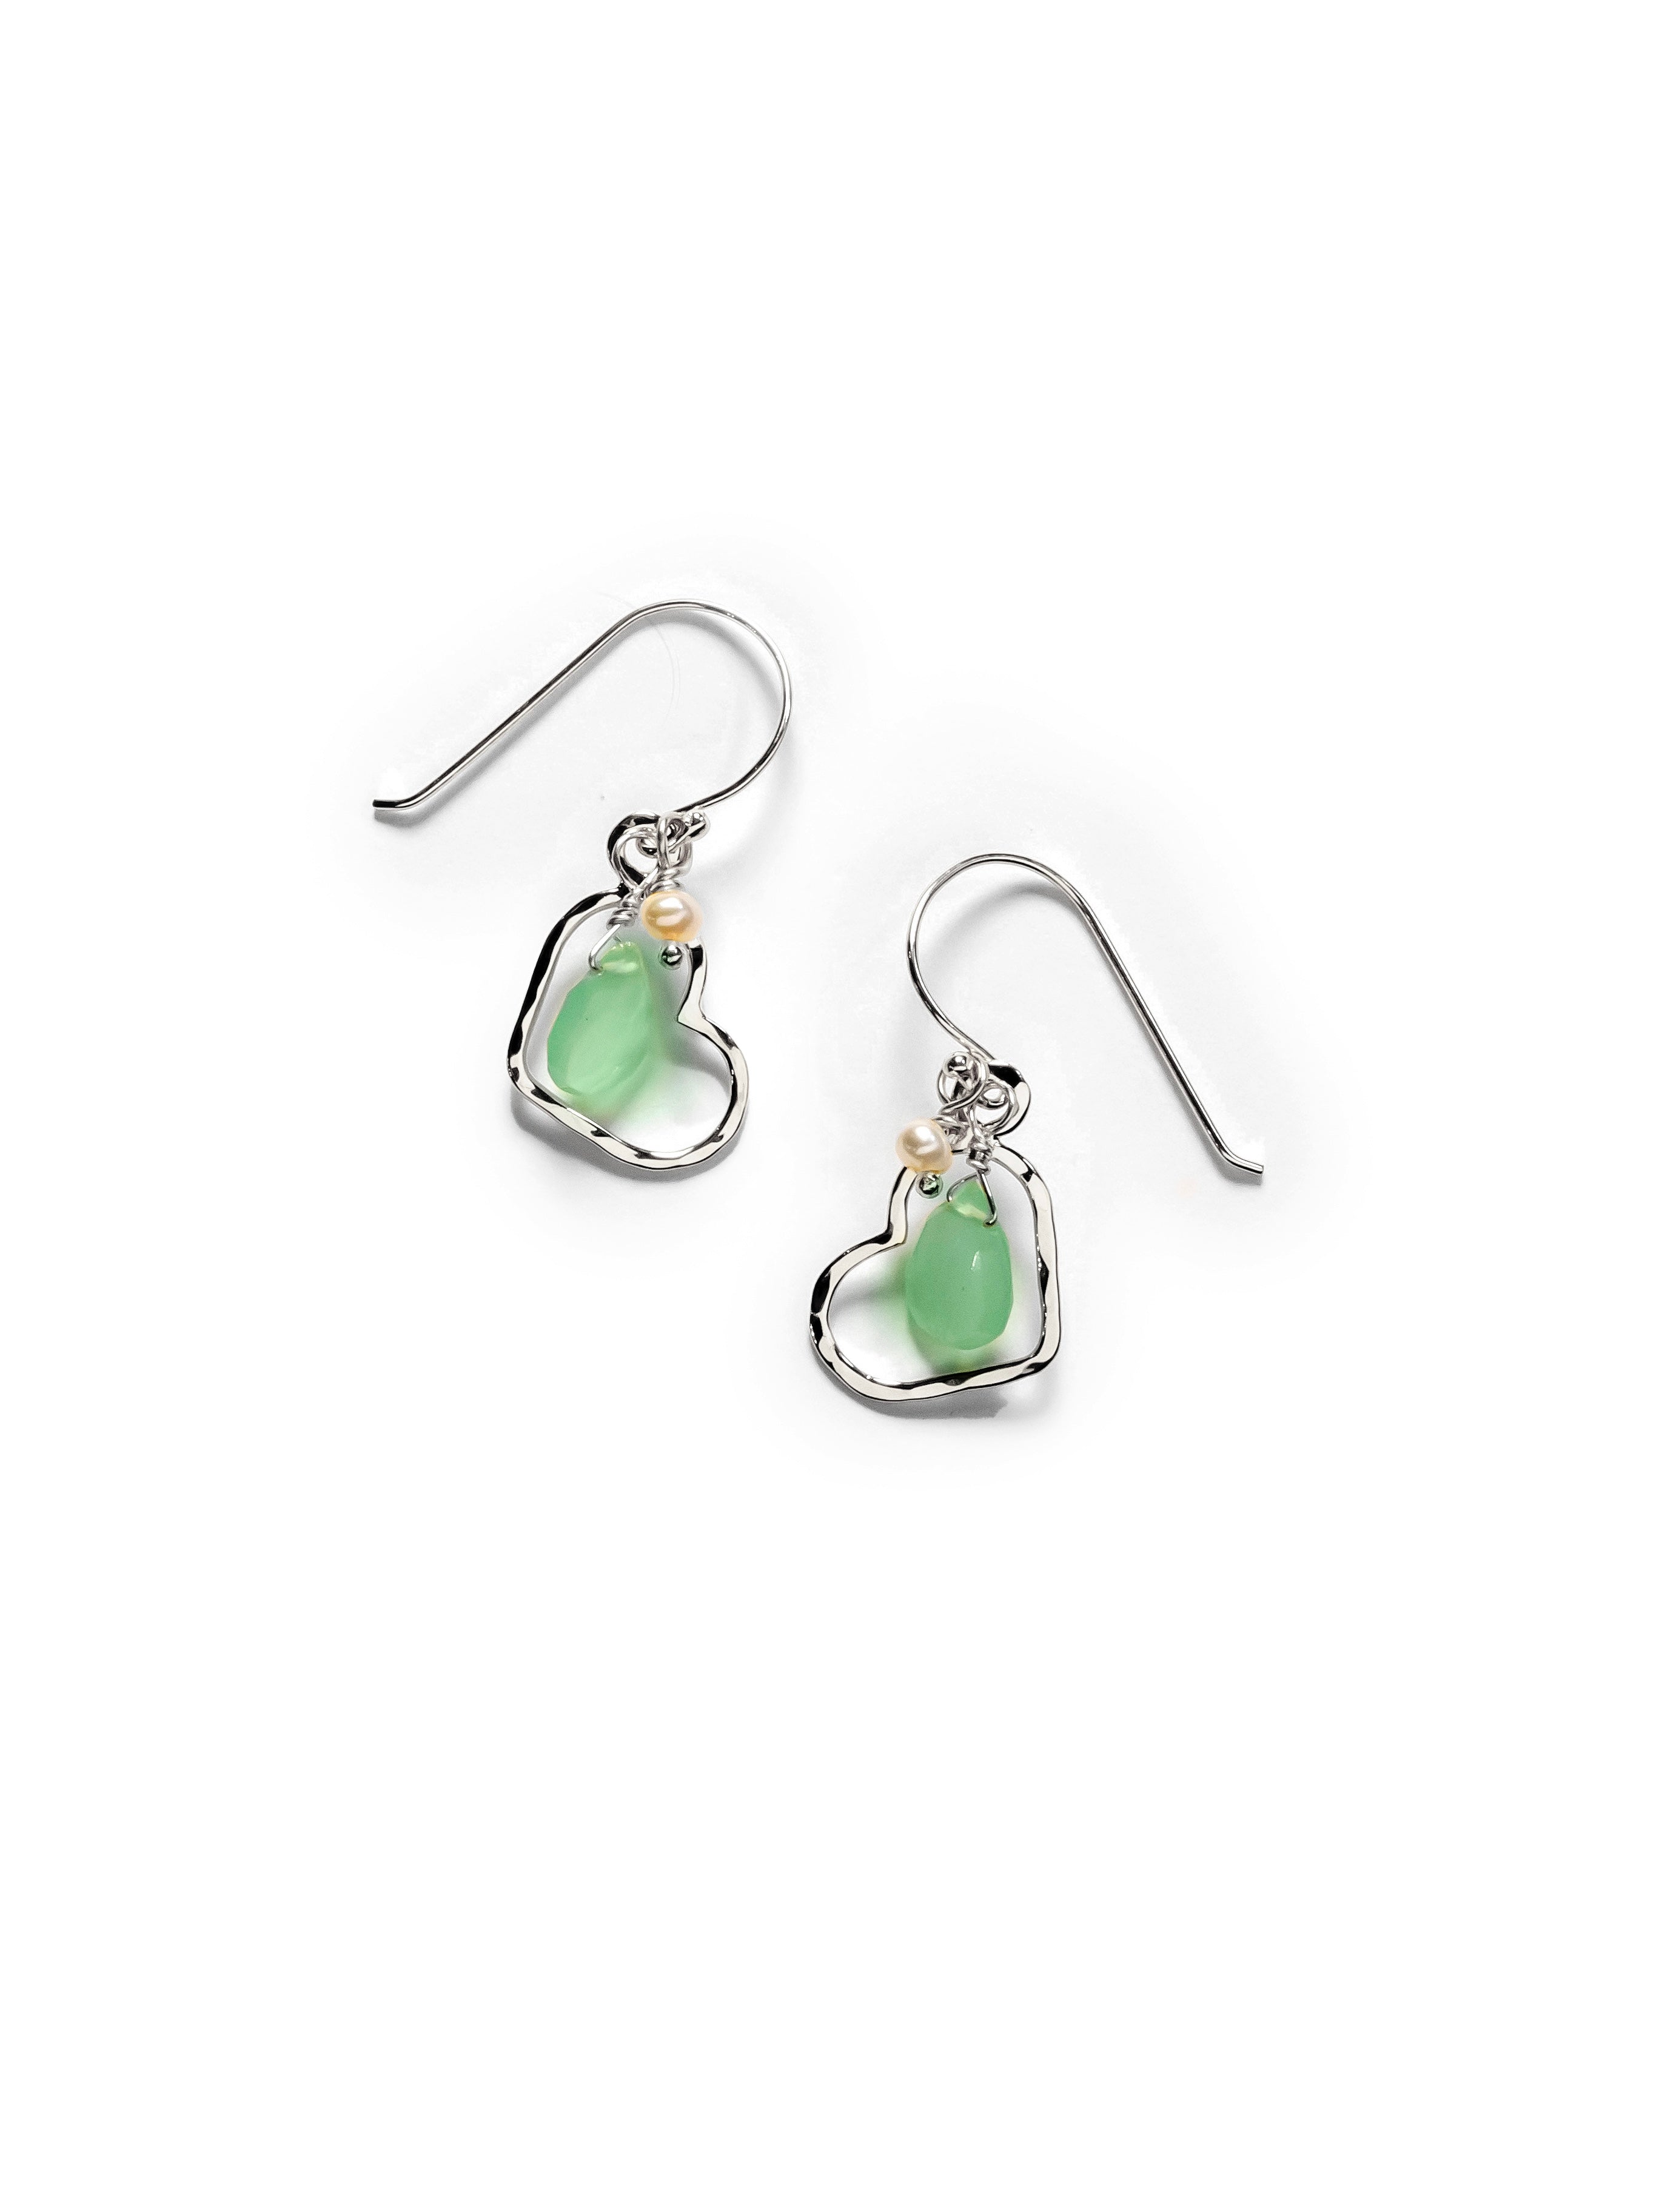 Seafoam Small Classic Heart Drop earrings